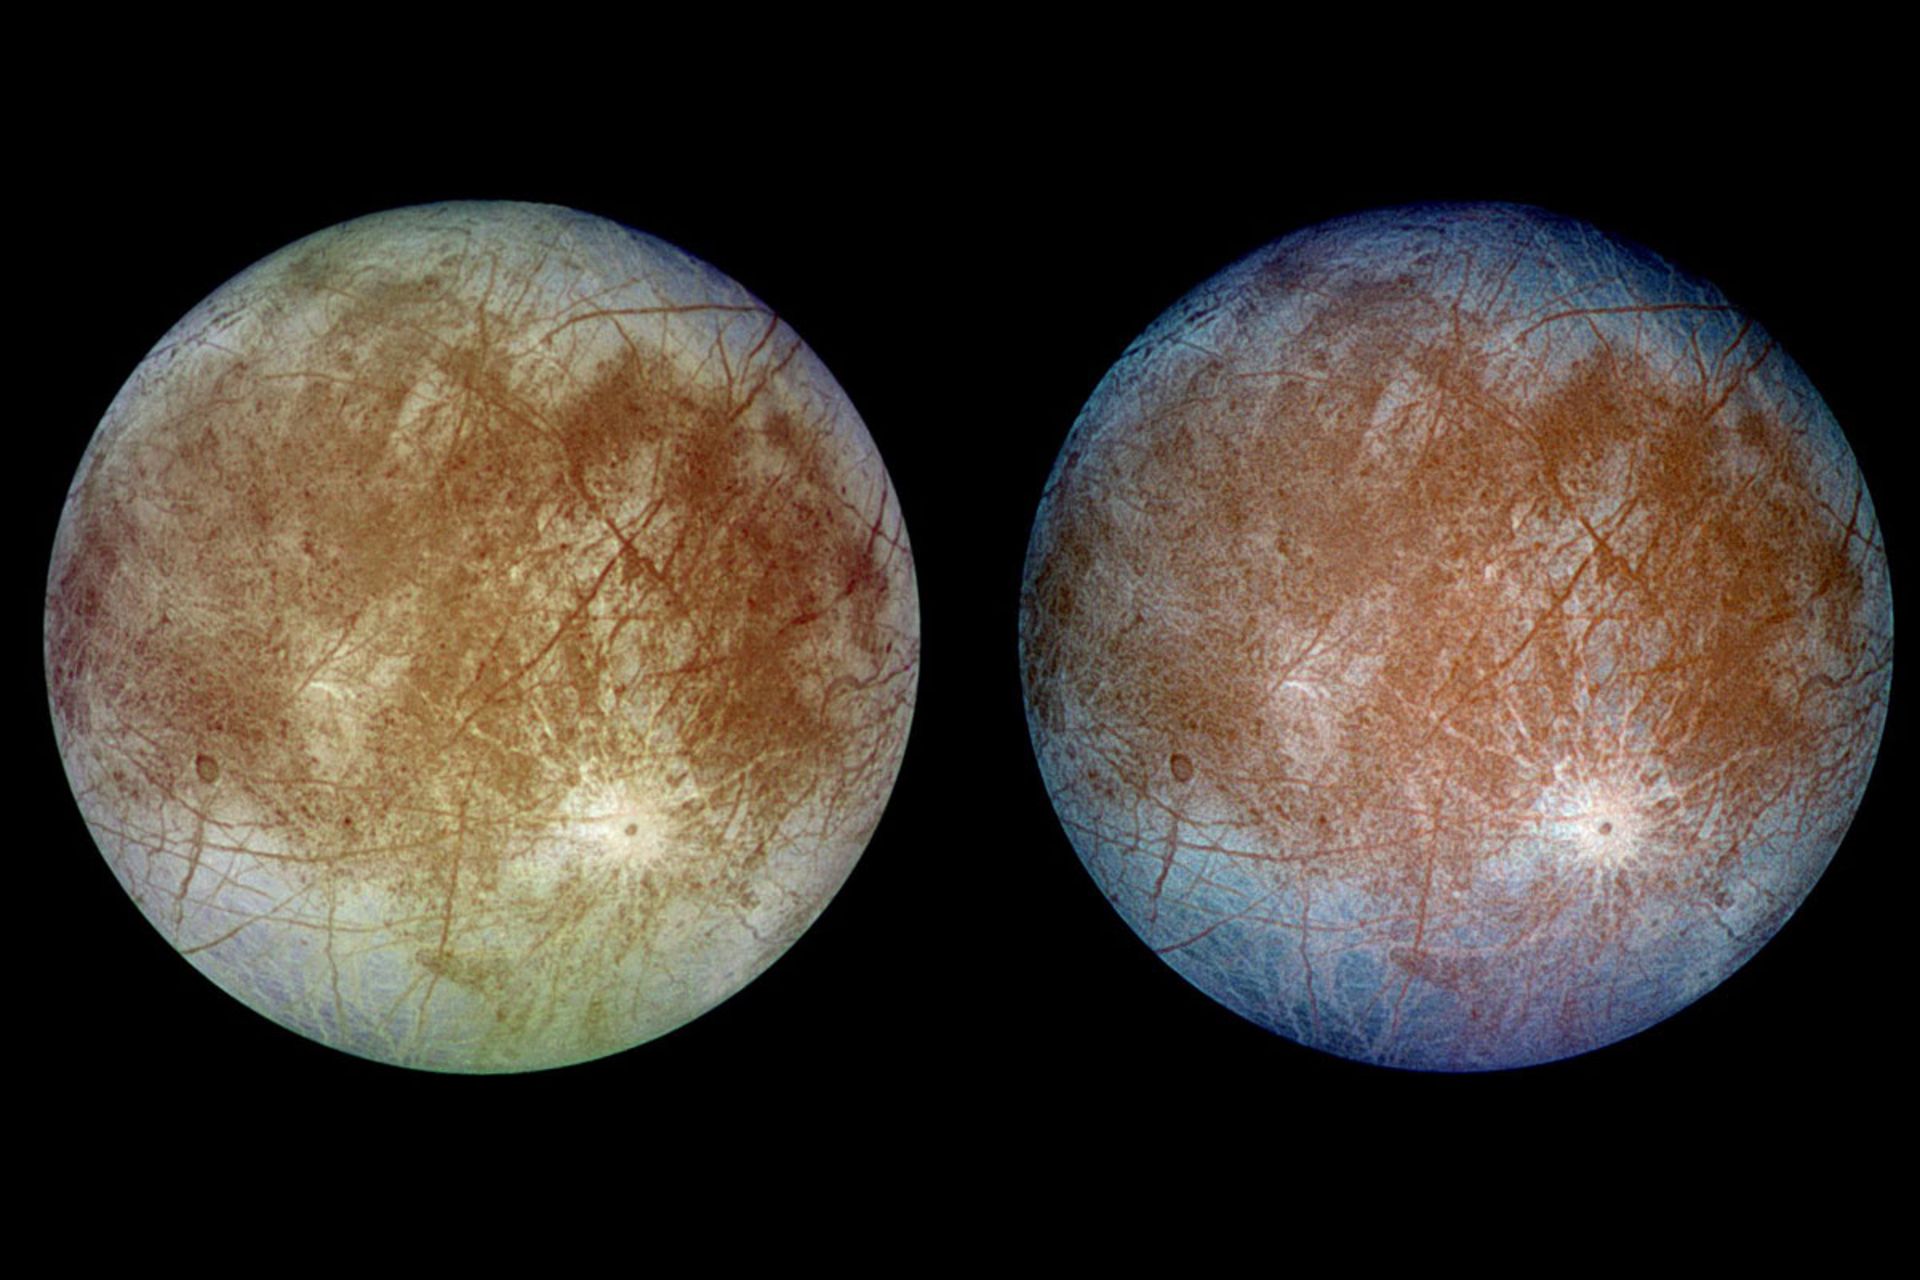 تصویر رنگی طبیعی (سمت چپ) در مقابل تصویر رنگی کاذب (سمت راست)قمر اروپا